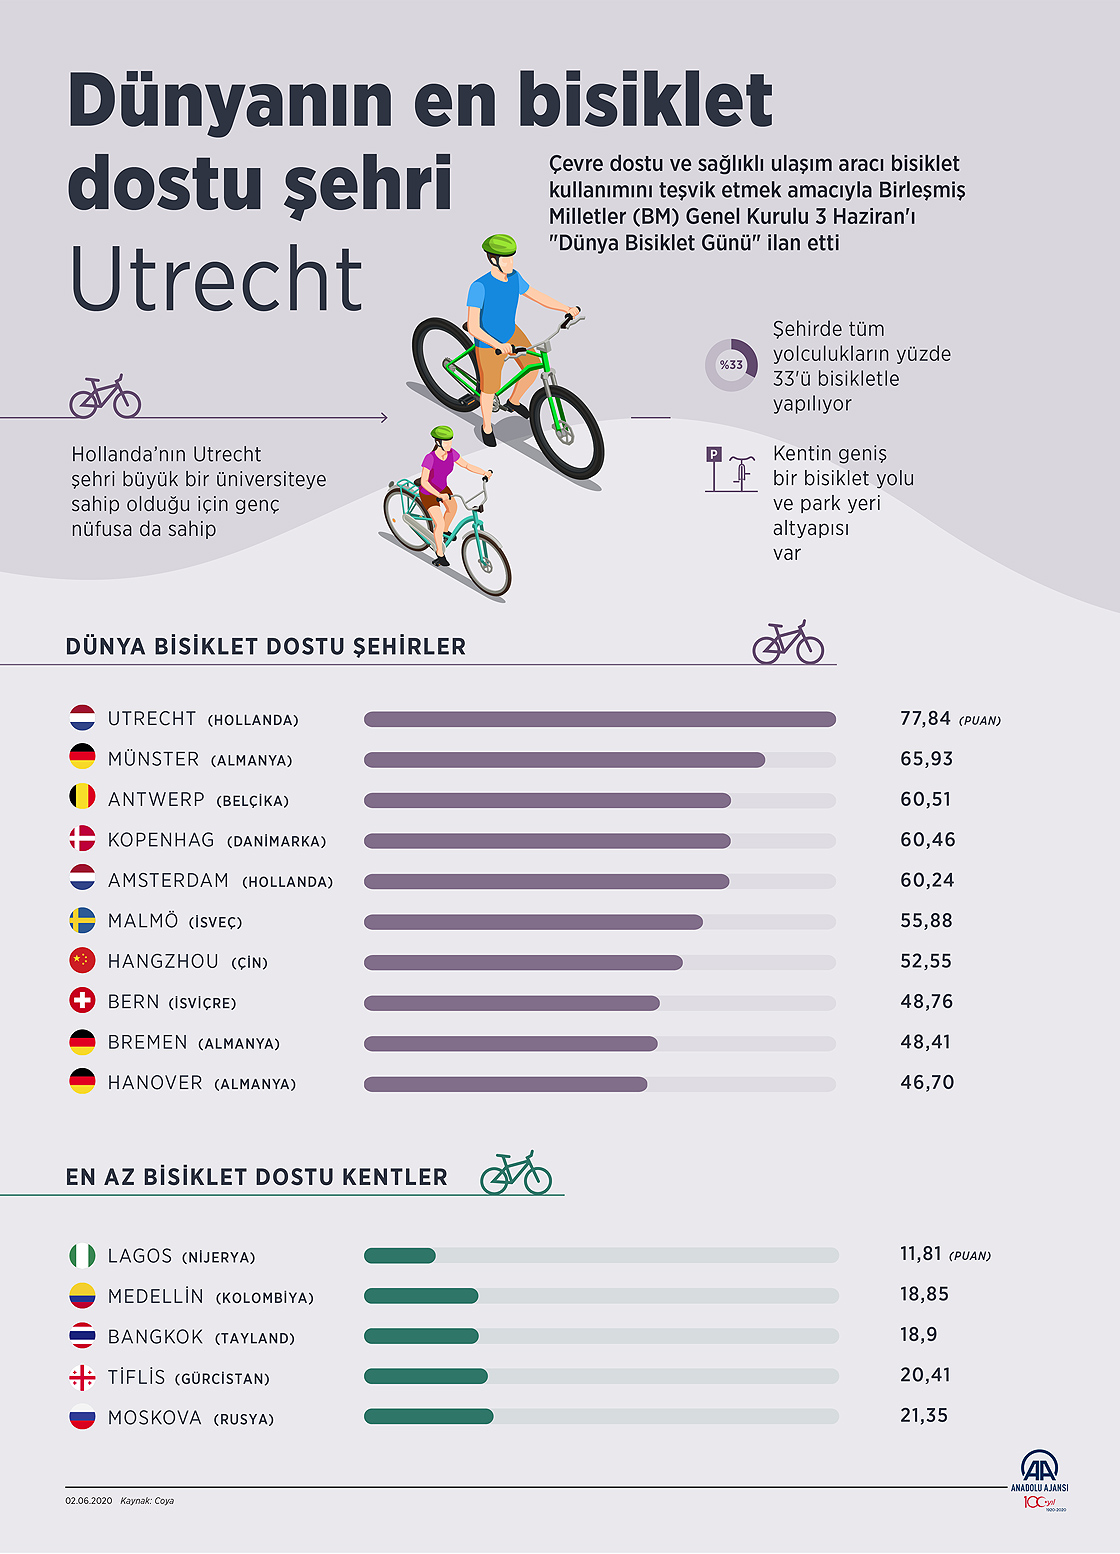 Dünyanın en bisiklet dostu şehri Utrecht